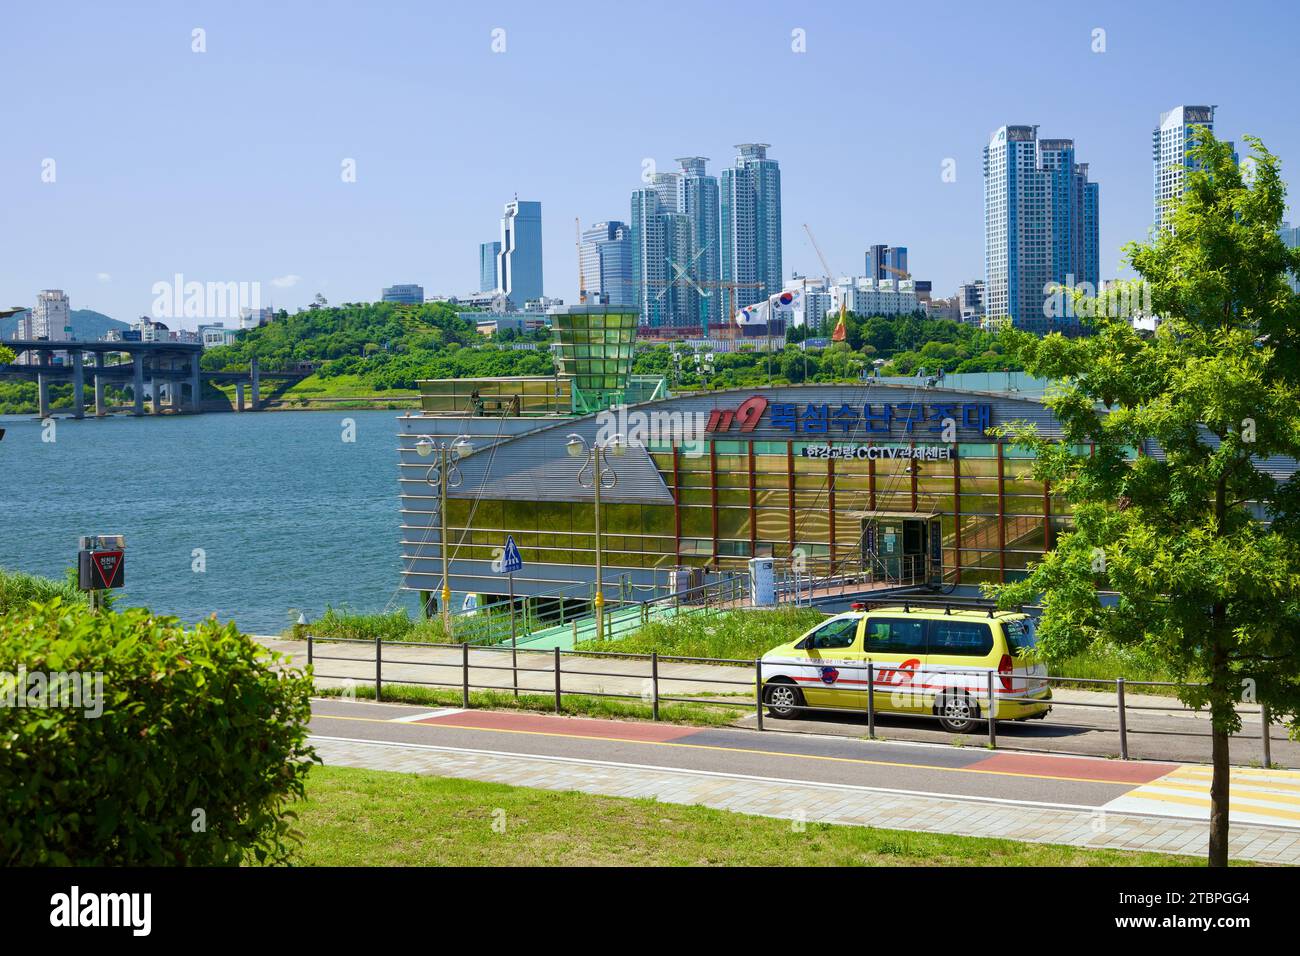 Eingebettet in die ruhige Umgebung des Ttukseom Hangang Park in Seoul, steht das 911 Rescue Center Dock als Symbol für Sicherheit und Wachsamkeit. Overlooki Stockfoto